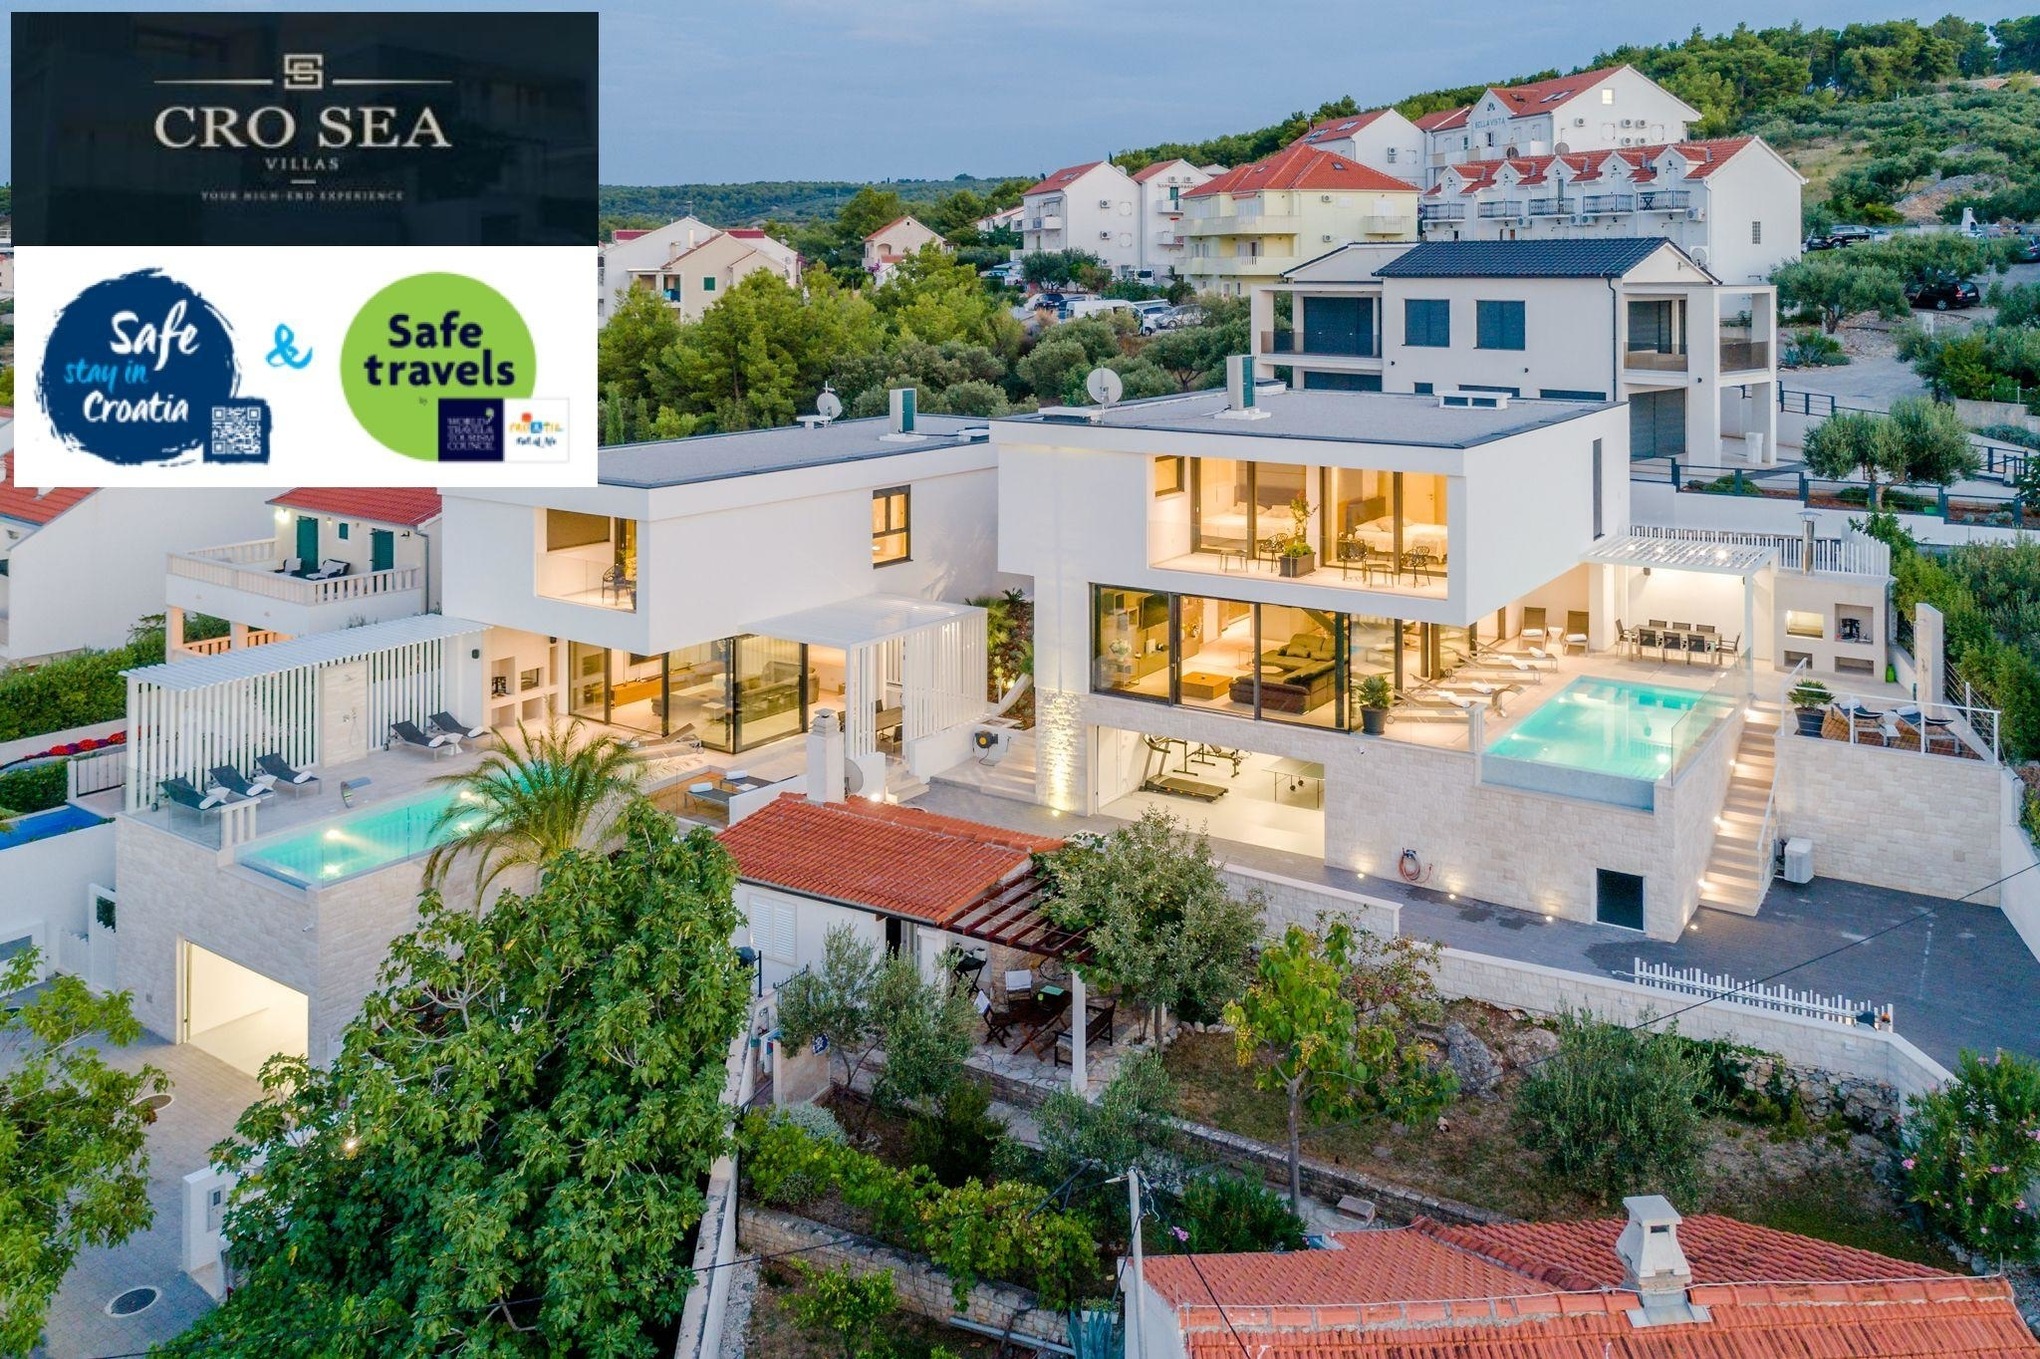 Luxury Villa Complex Pax & Vitae with heated i Ferienhaus  kroatische Inseln